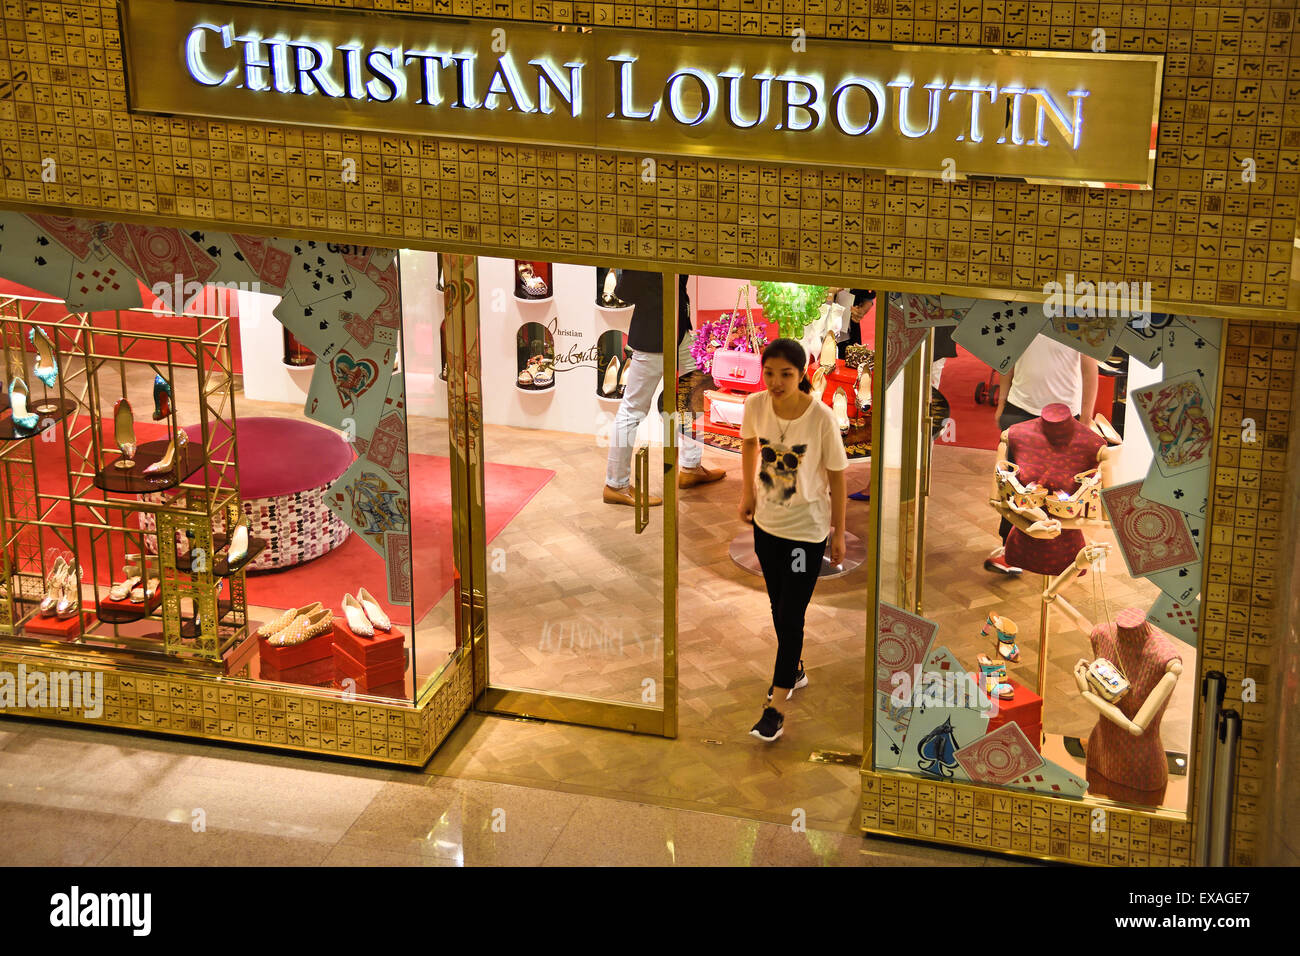 Christian Louboutin shoe shoes Hong Kong Fashion China Chinese ...